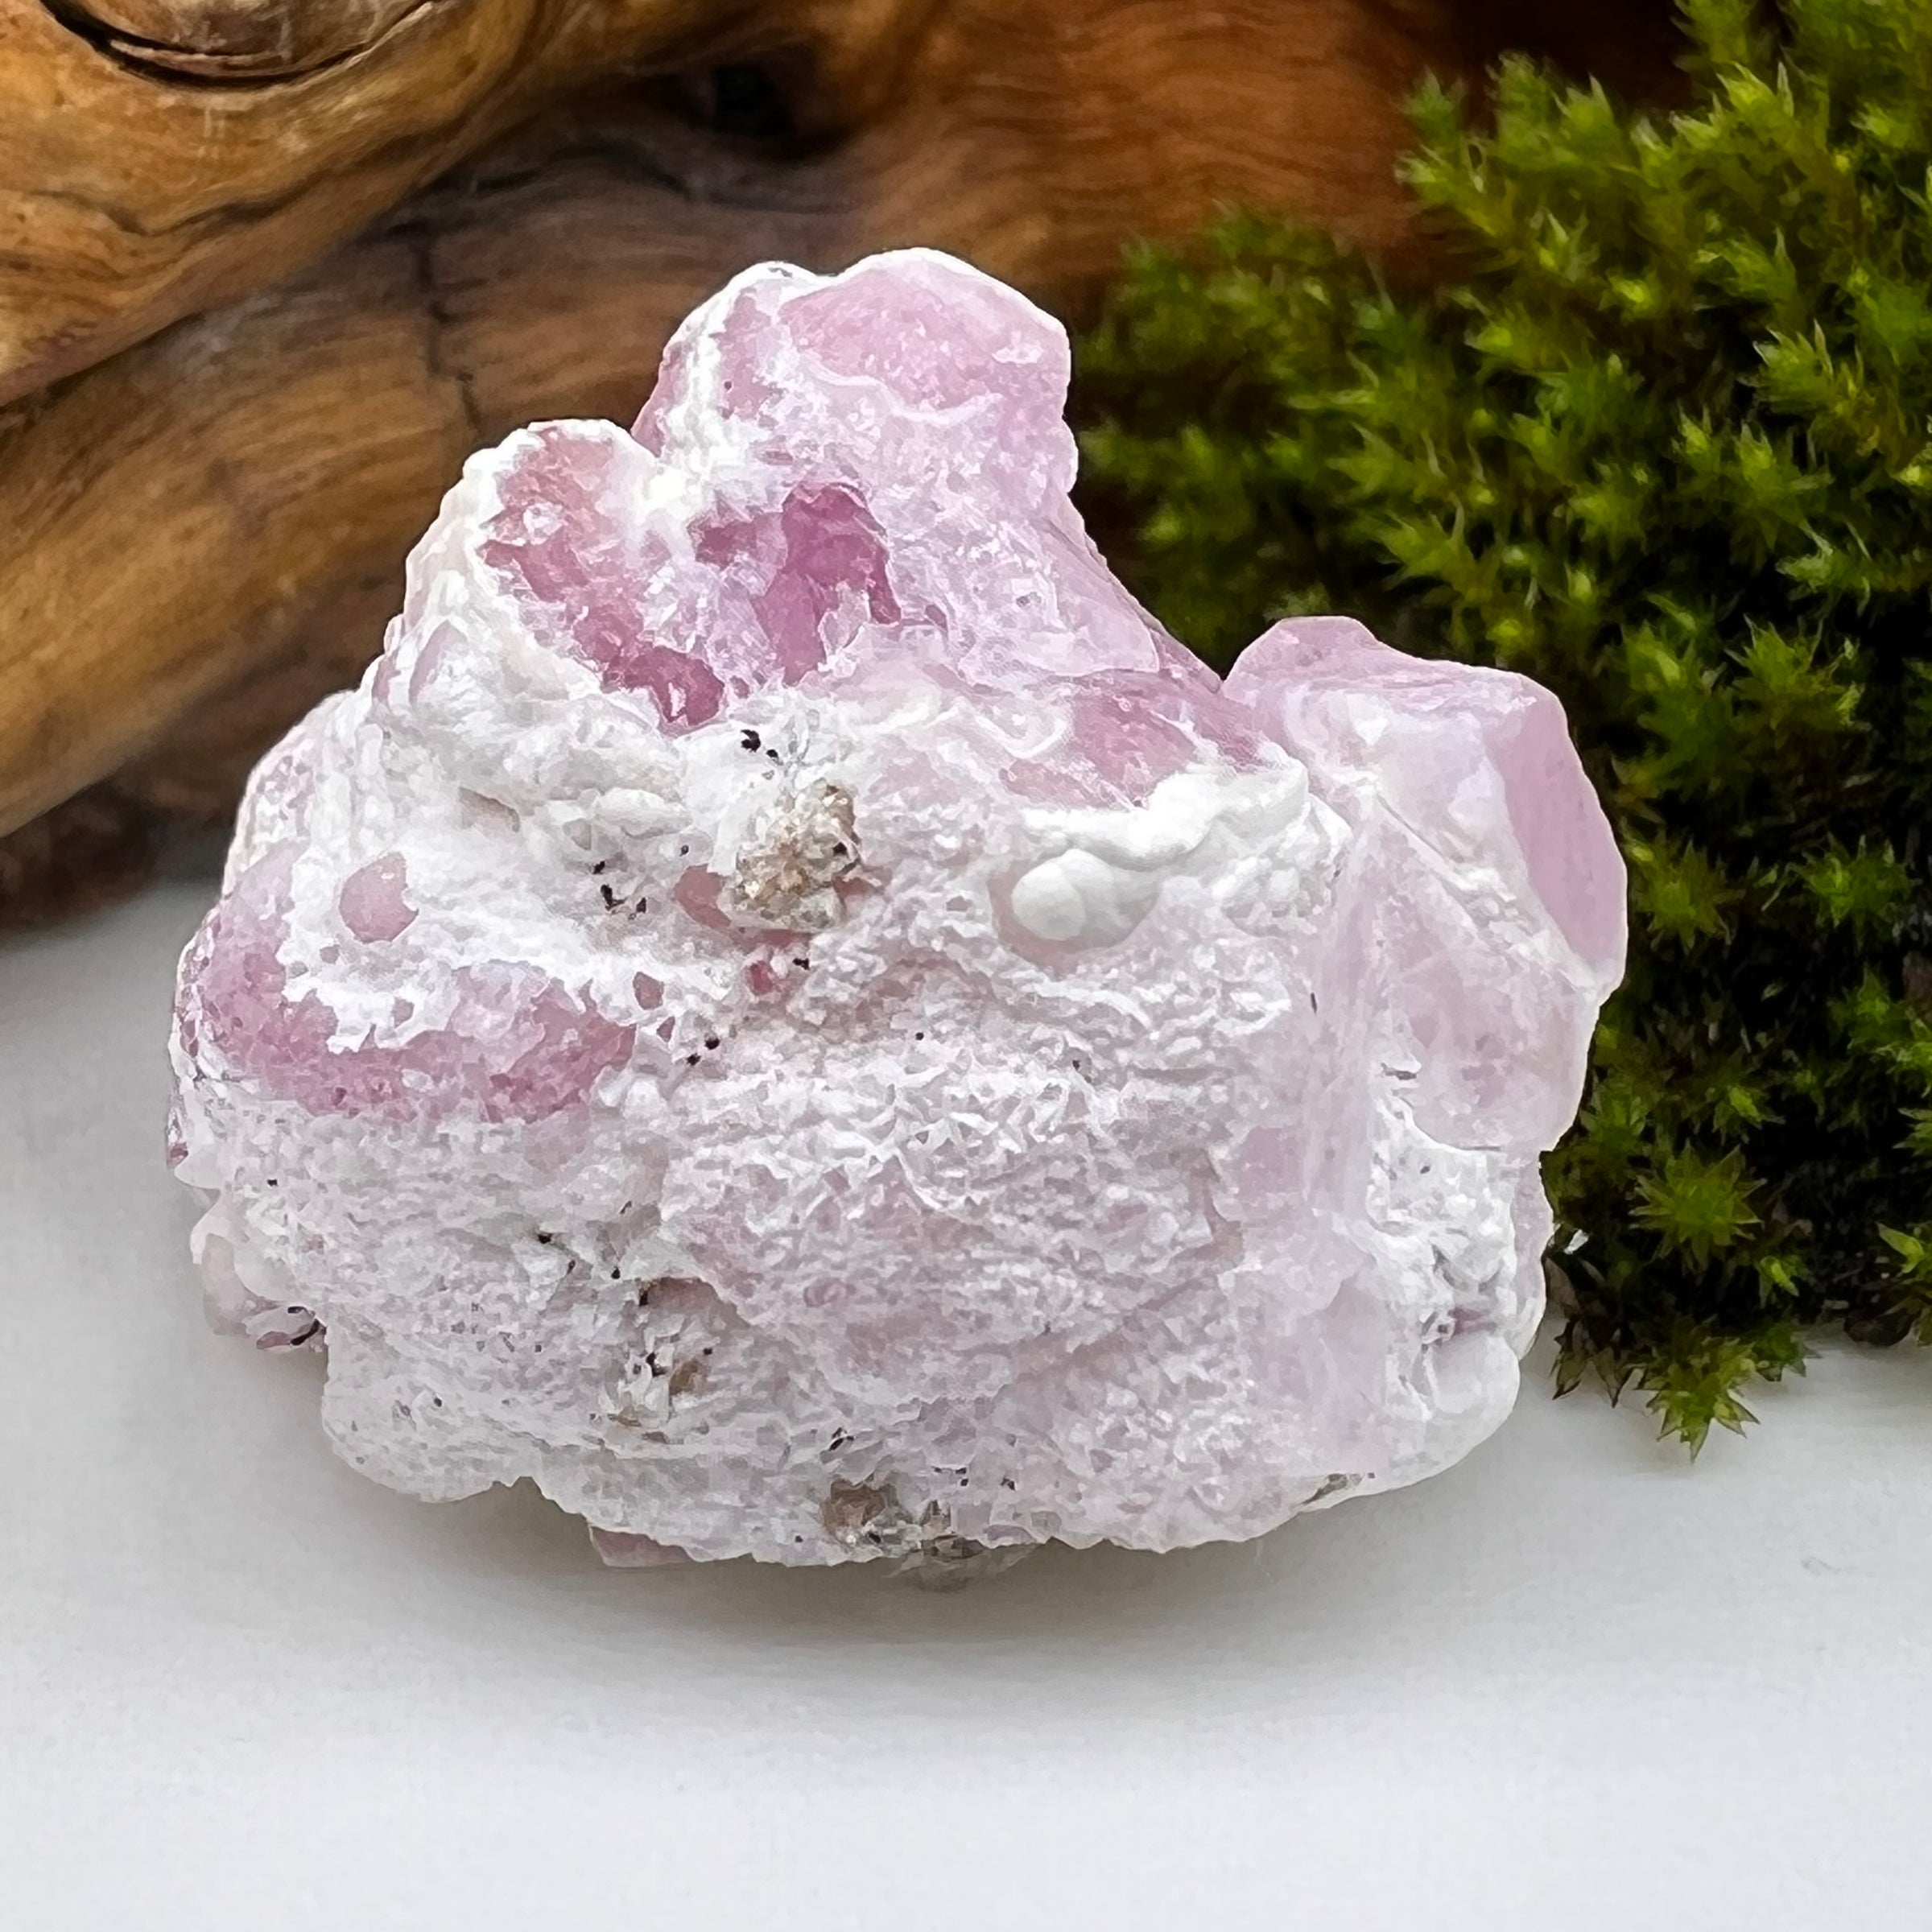 Crystalized Rose Quartz Pink Chacedony #56-Moldavite Life